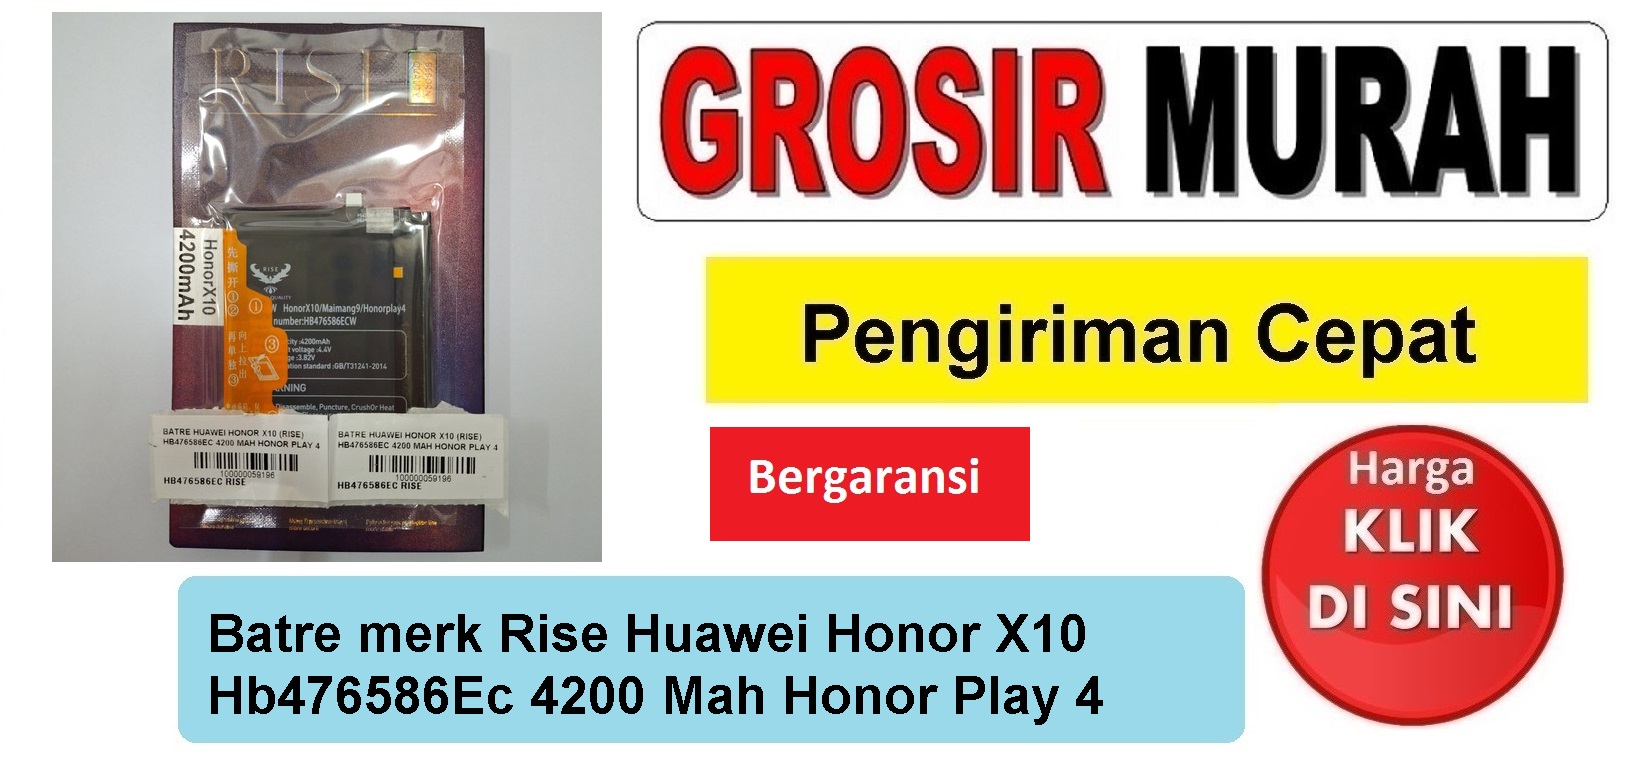 Batre merk Rise Huawei Honor X10 Hb476586Ec 4200 Mah Honor Play 4 Baterai Battery Bergaransi Batere